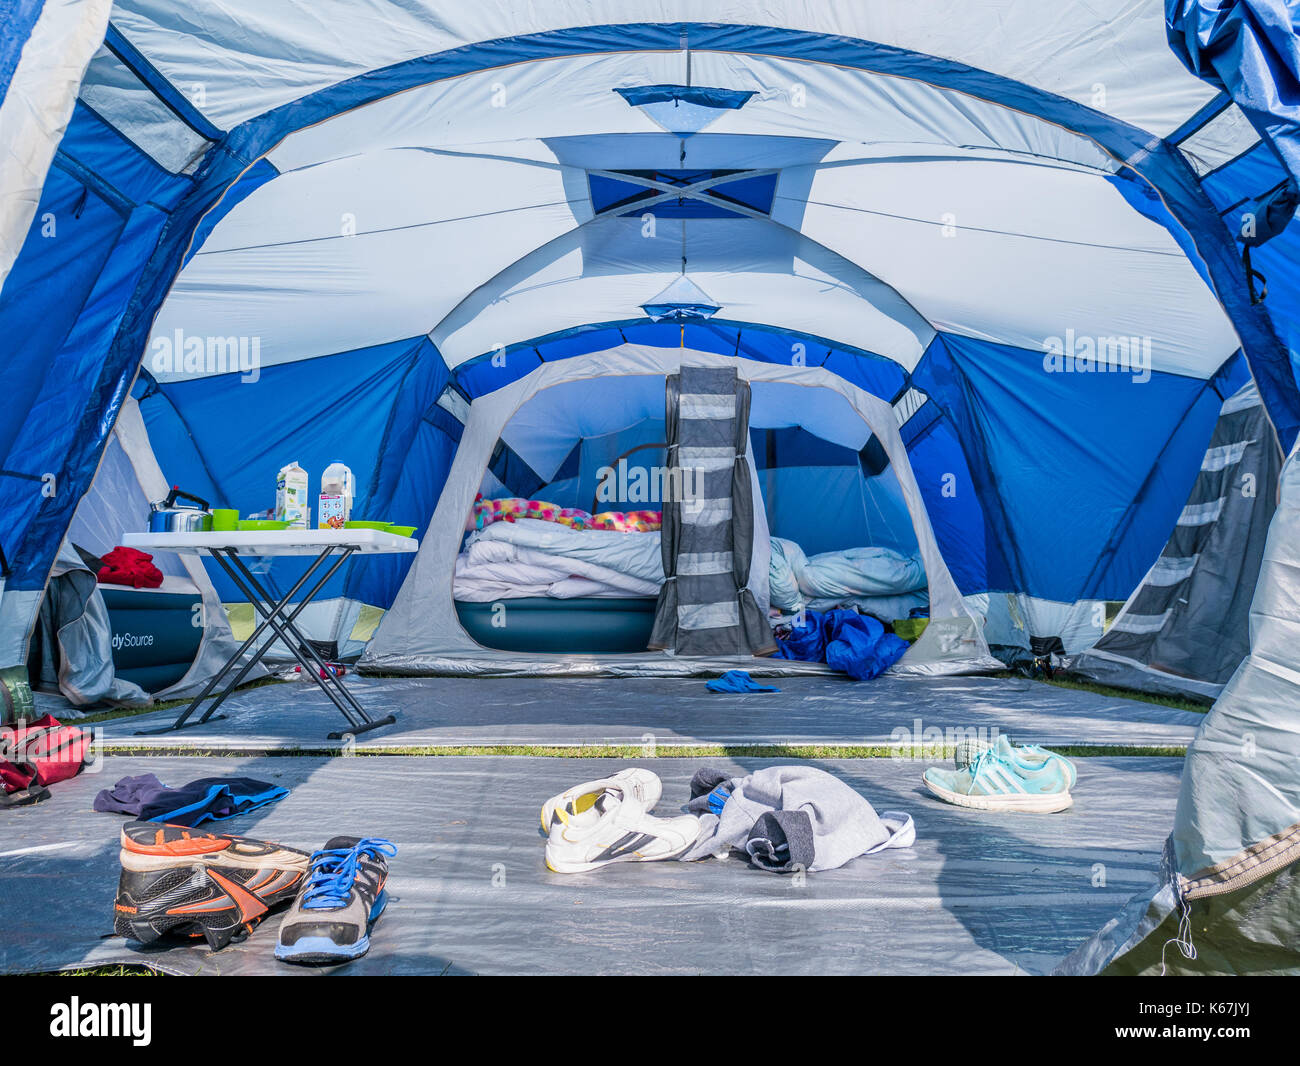 Intérieur d'une tente familiale pour le camping en plein air dans un champ  Photo Stock - Alamy